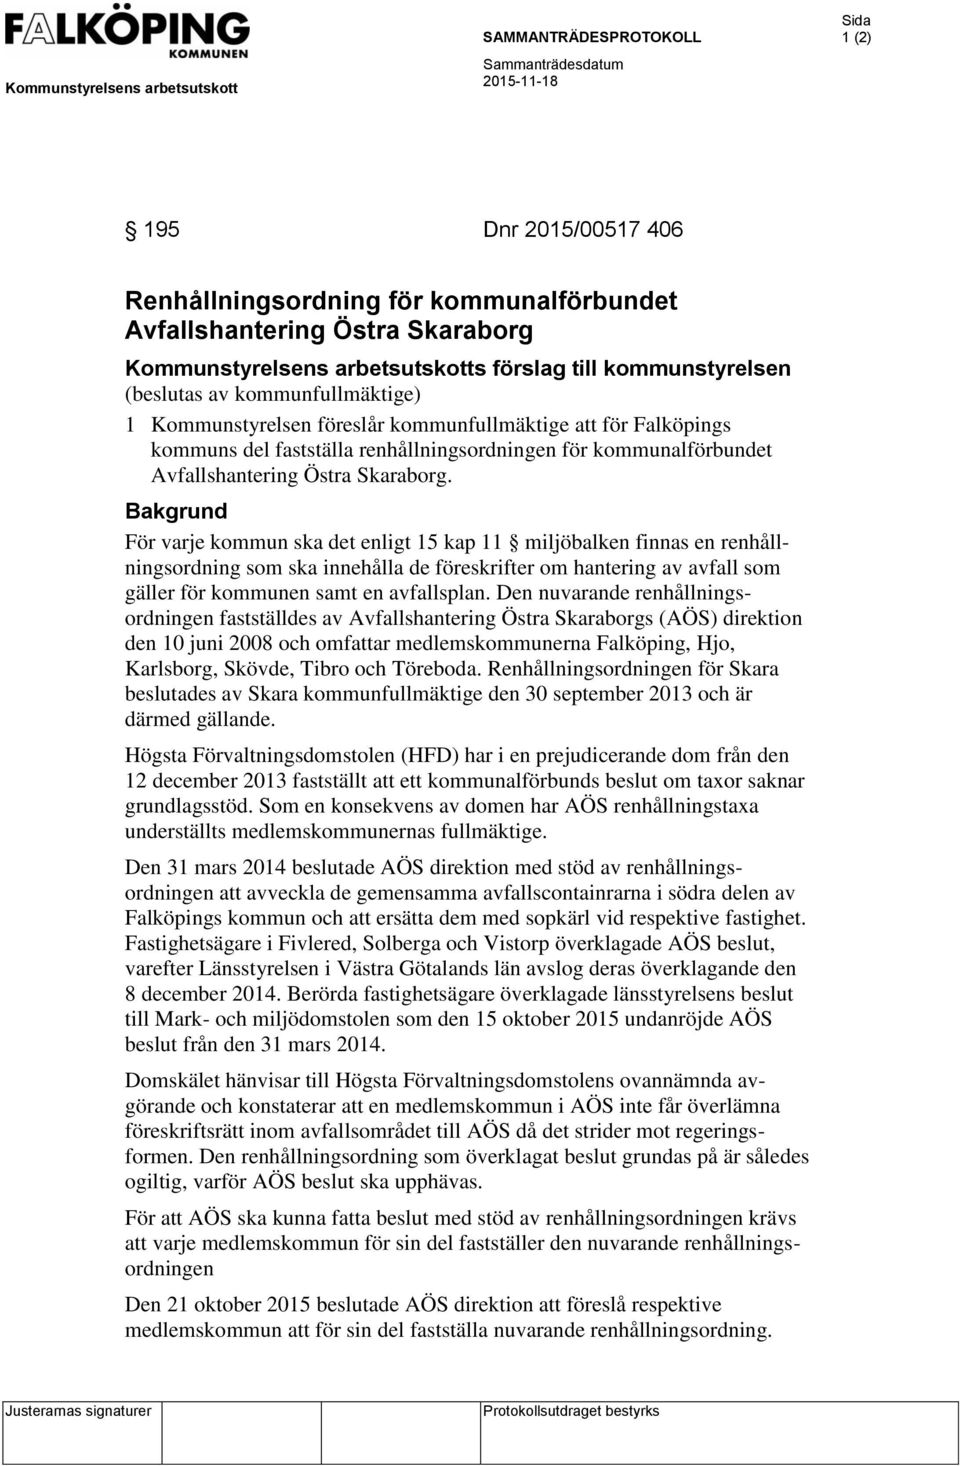 renhållningsordningen för kommunalförbundet Avfallshantering Östra Skaraborg.